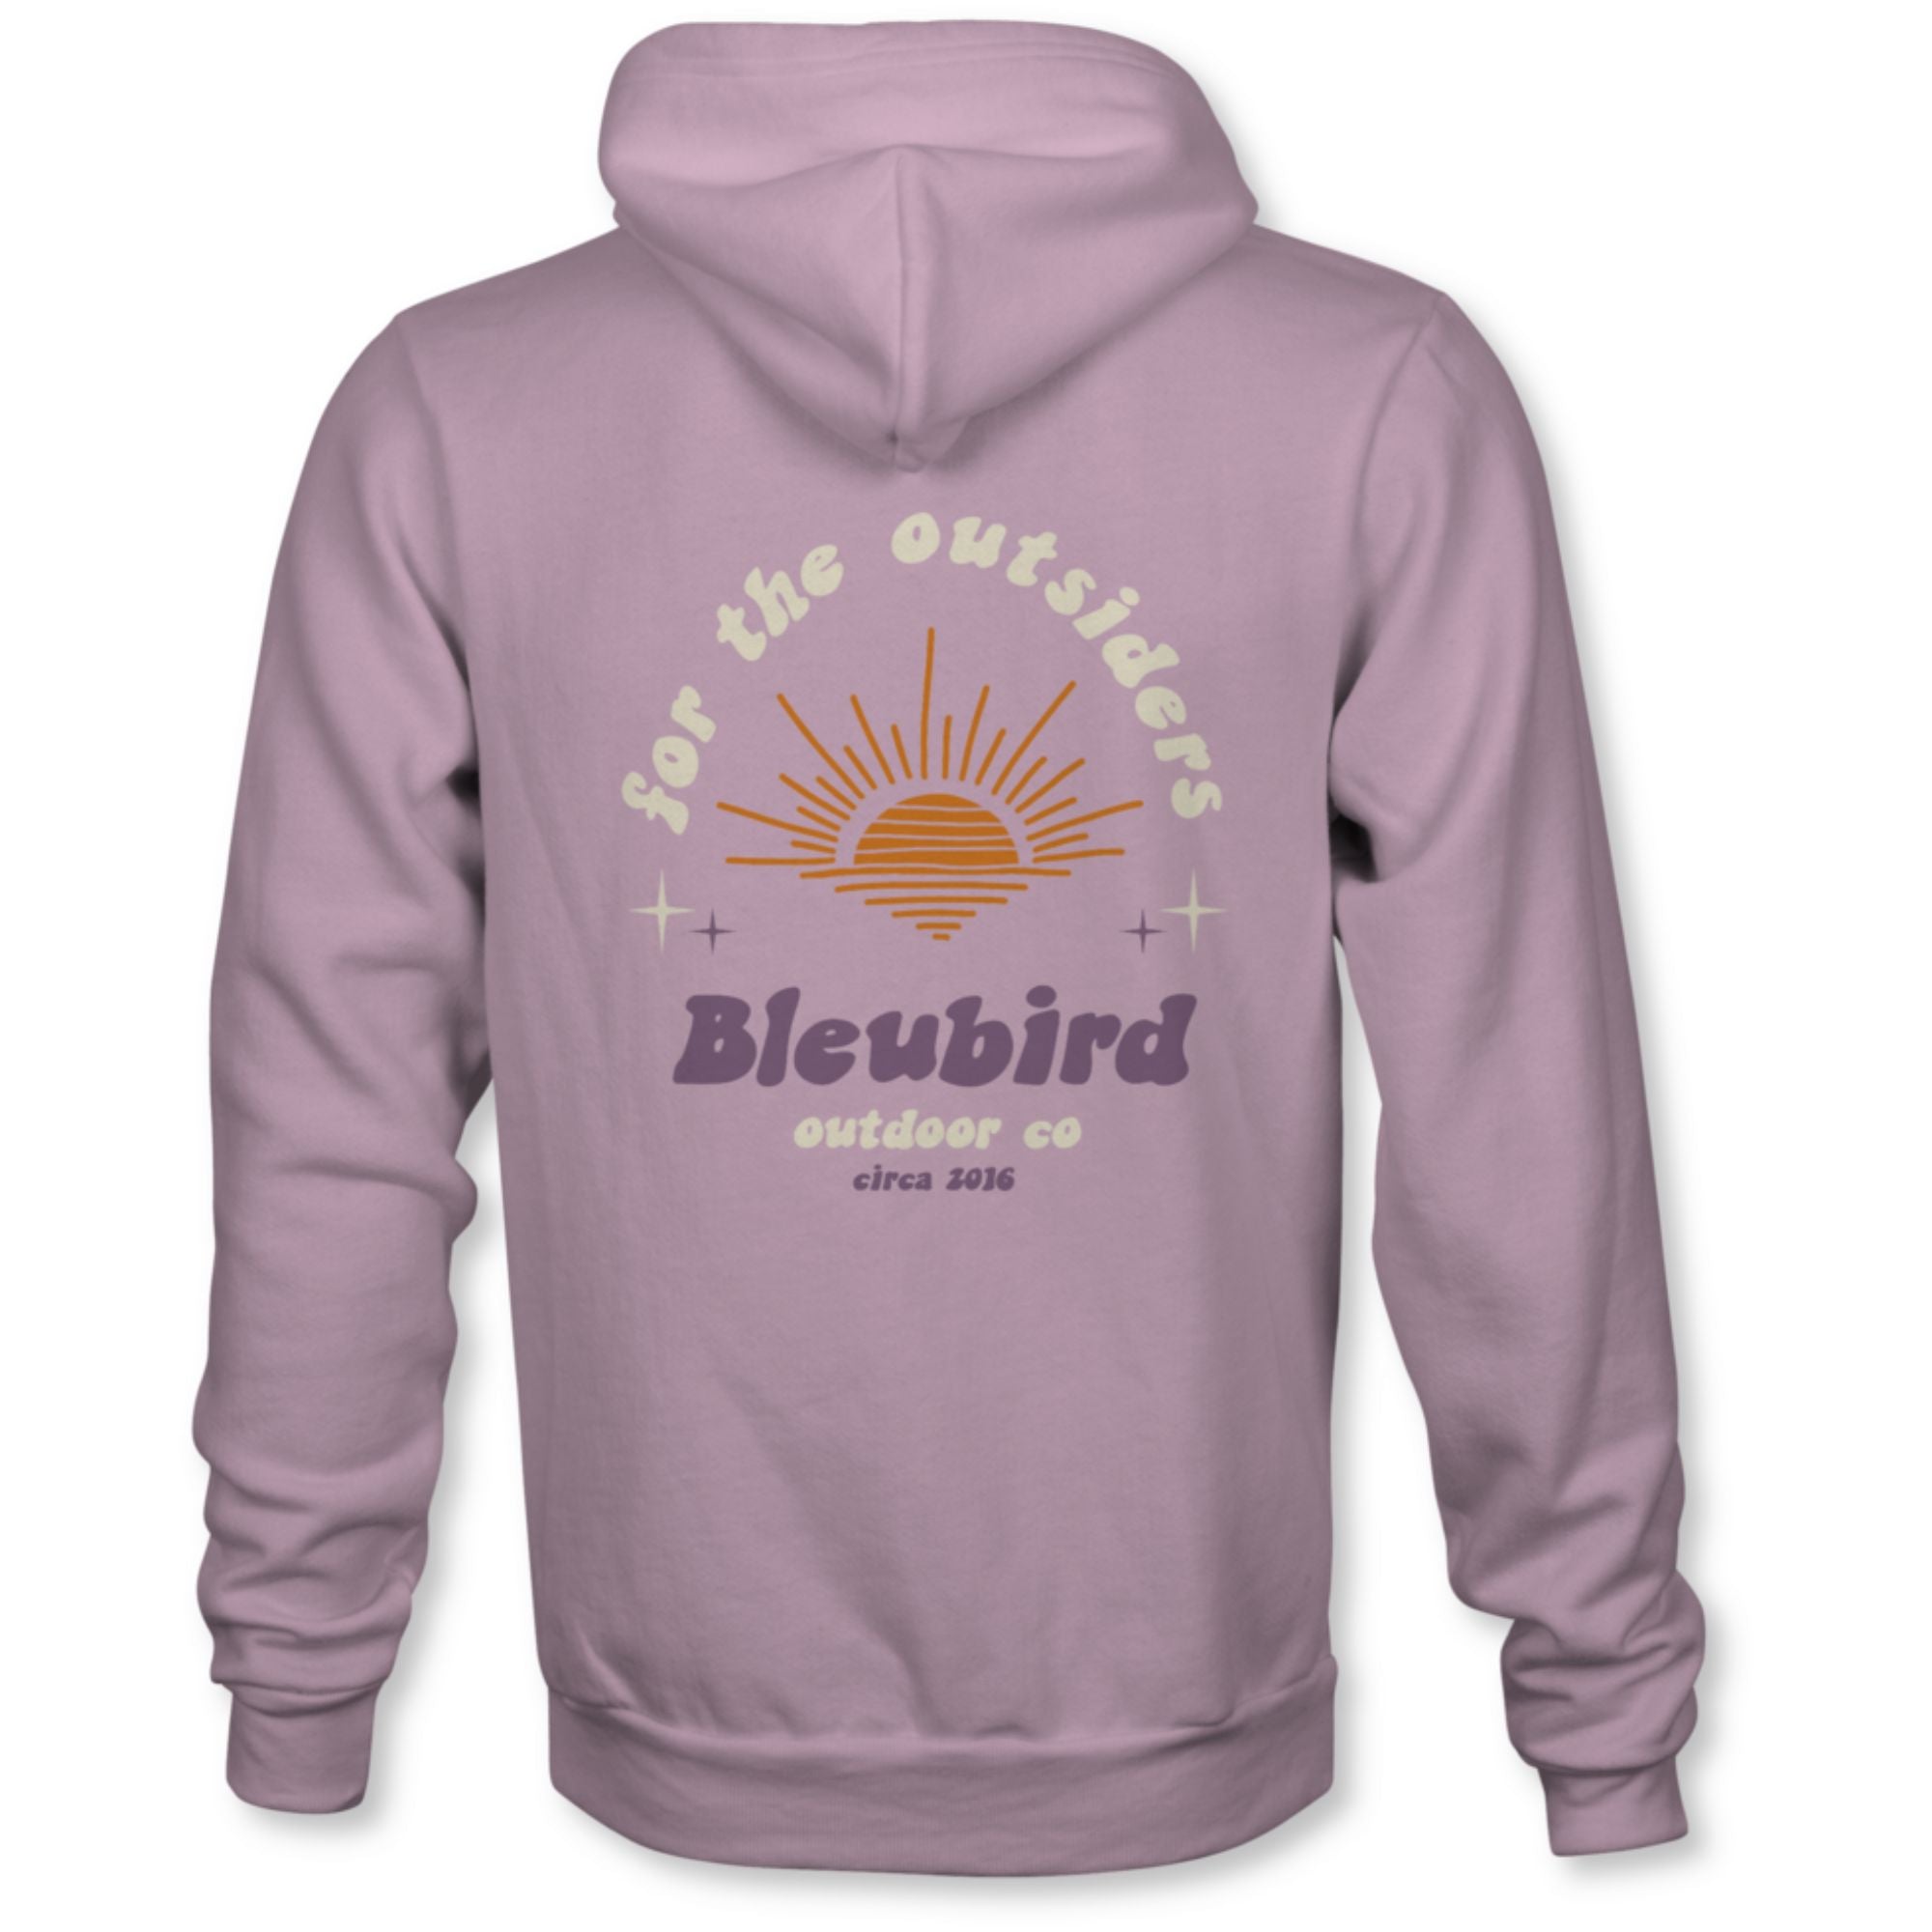 Bleubird Outsider Hoody - Description | Bleubird | Portwest - The Outdoor Shop